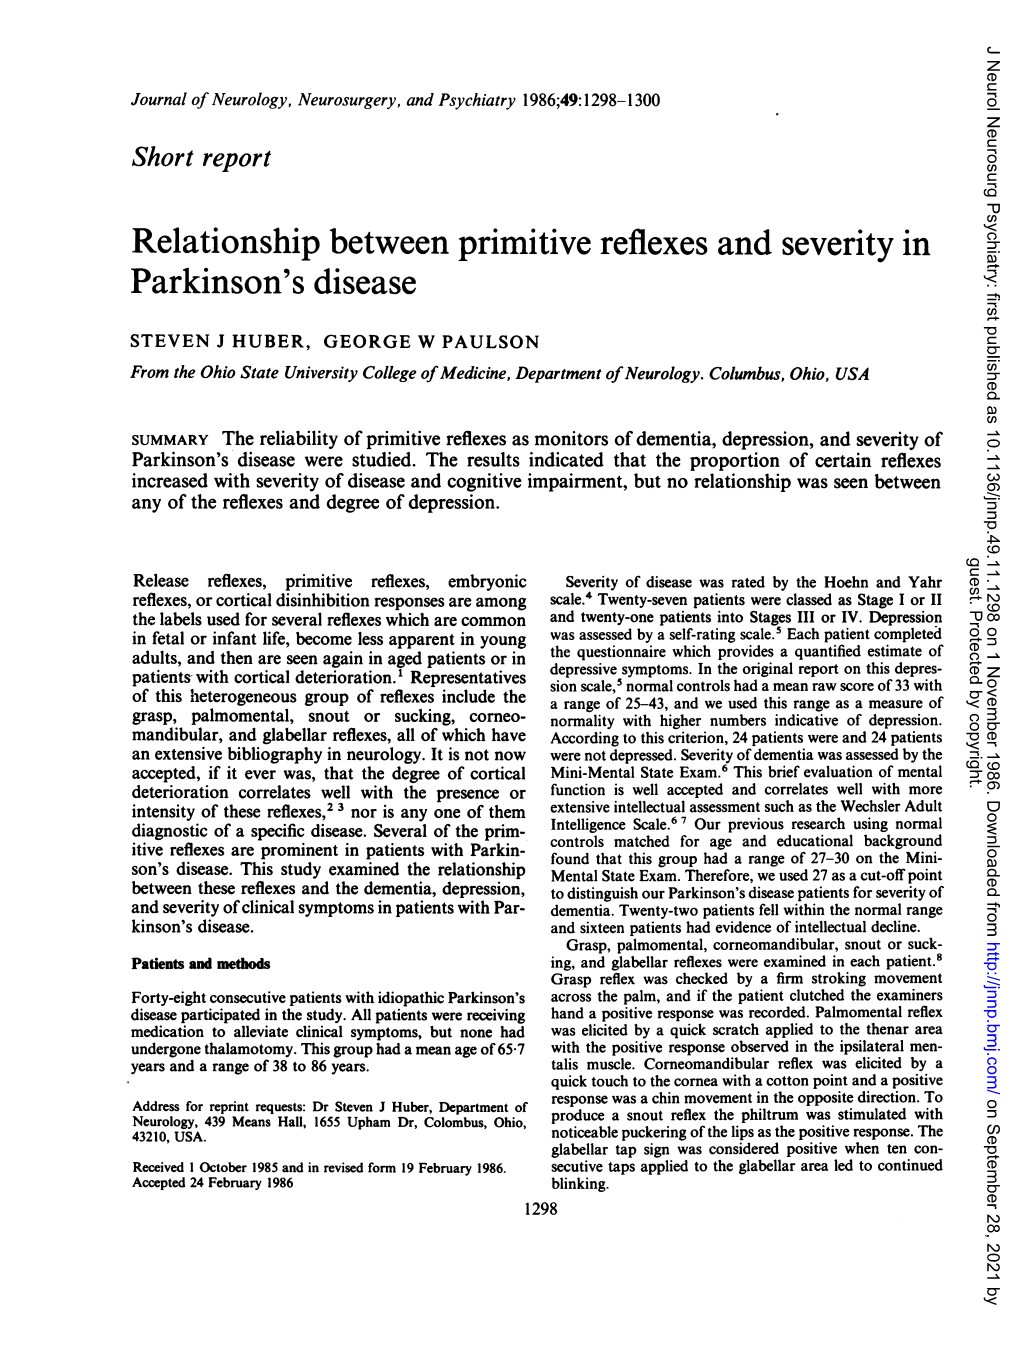 Relationship Between Primitive Reflexes and Severity in Parkinson's Disease